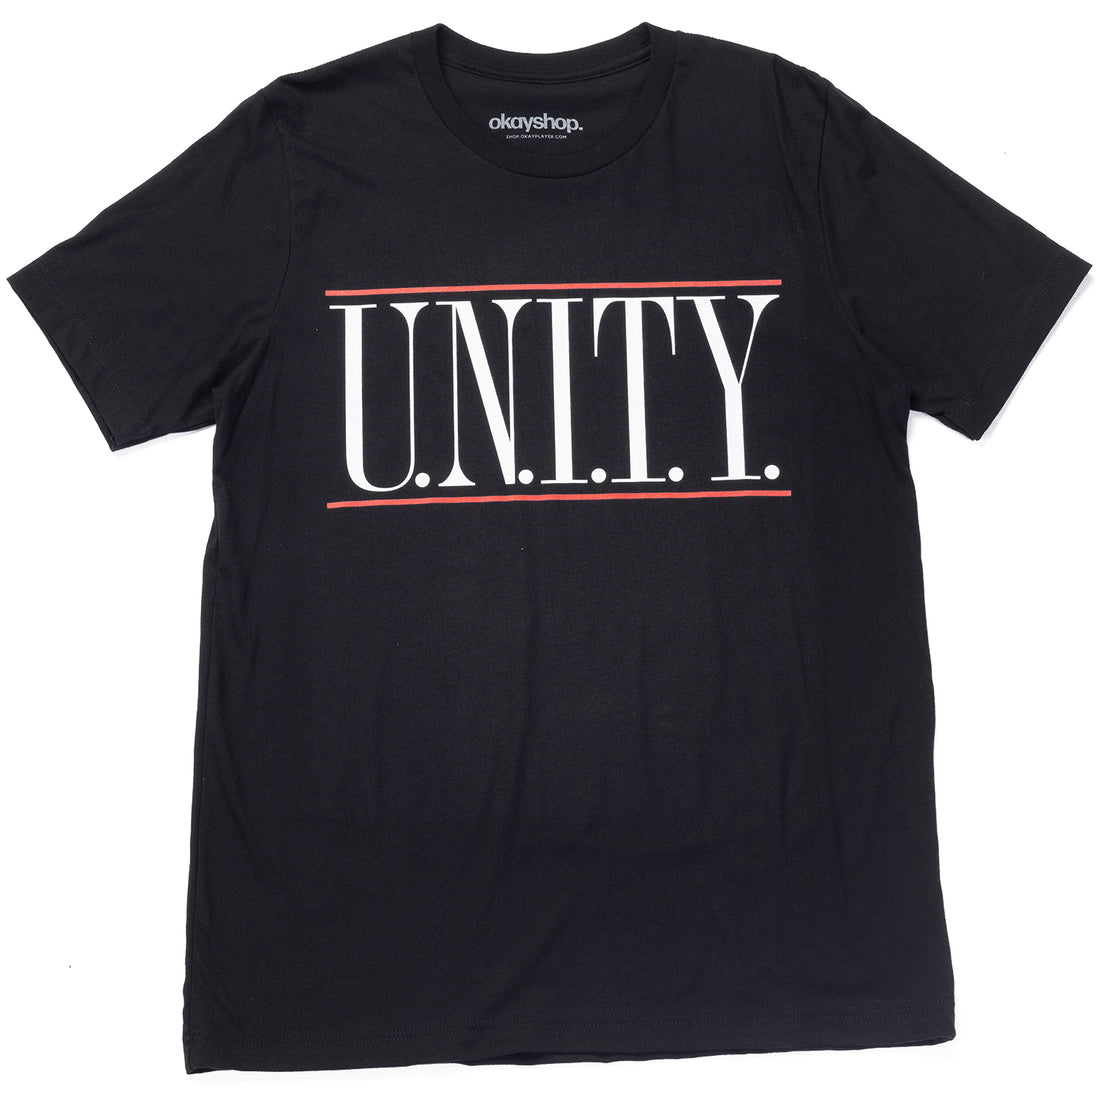 U.N.I.T.Y. T-Shirt